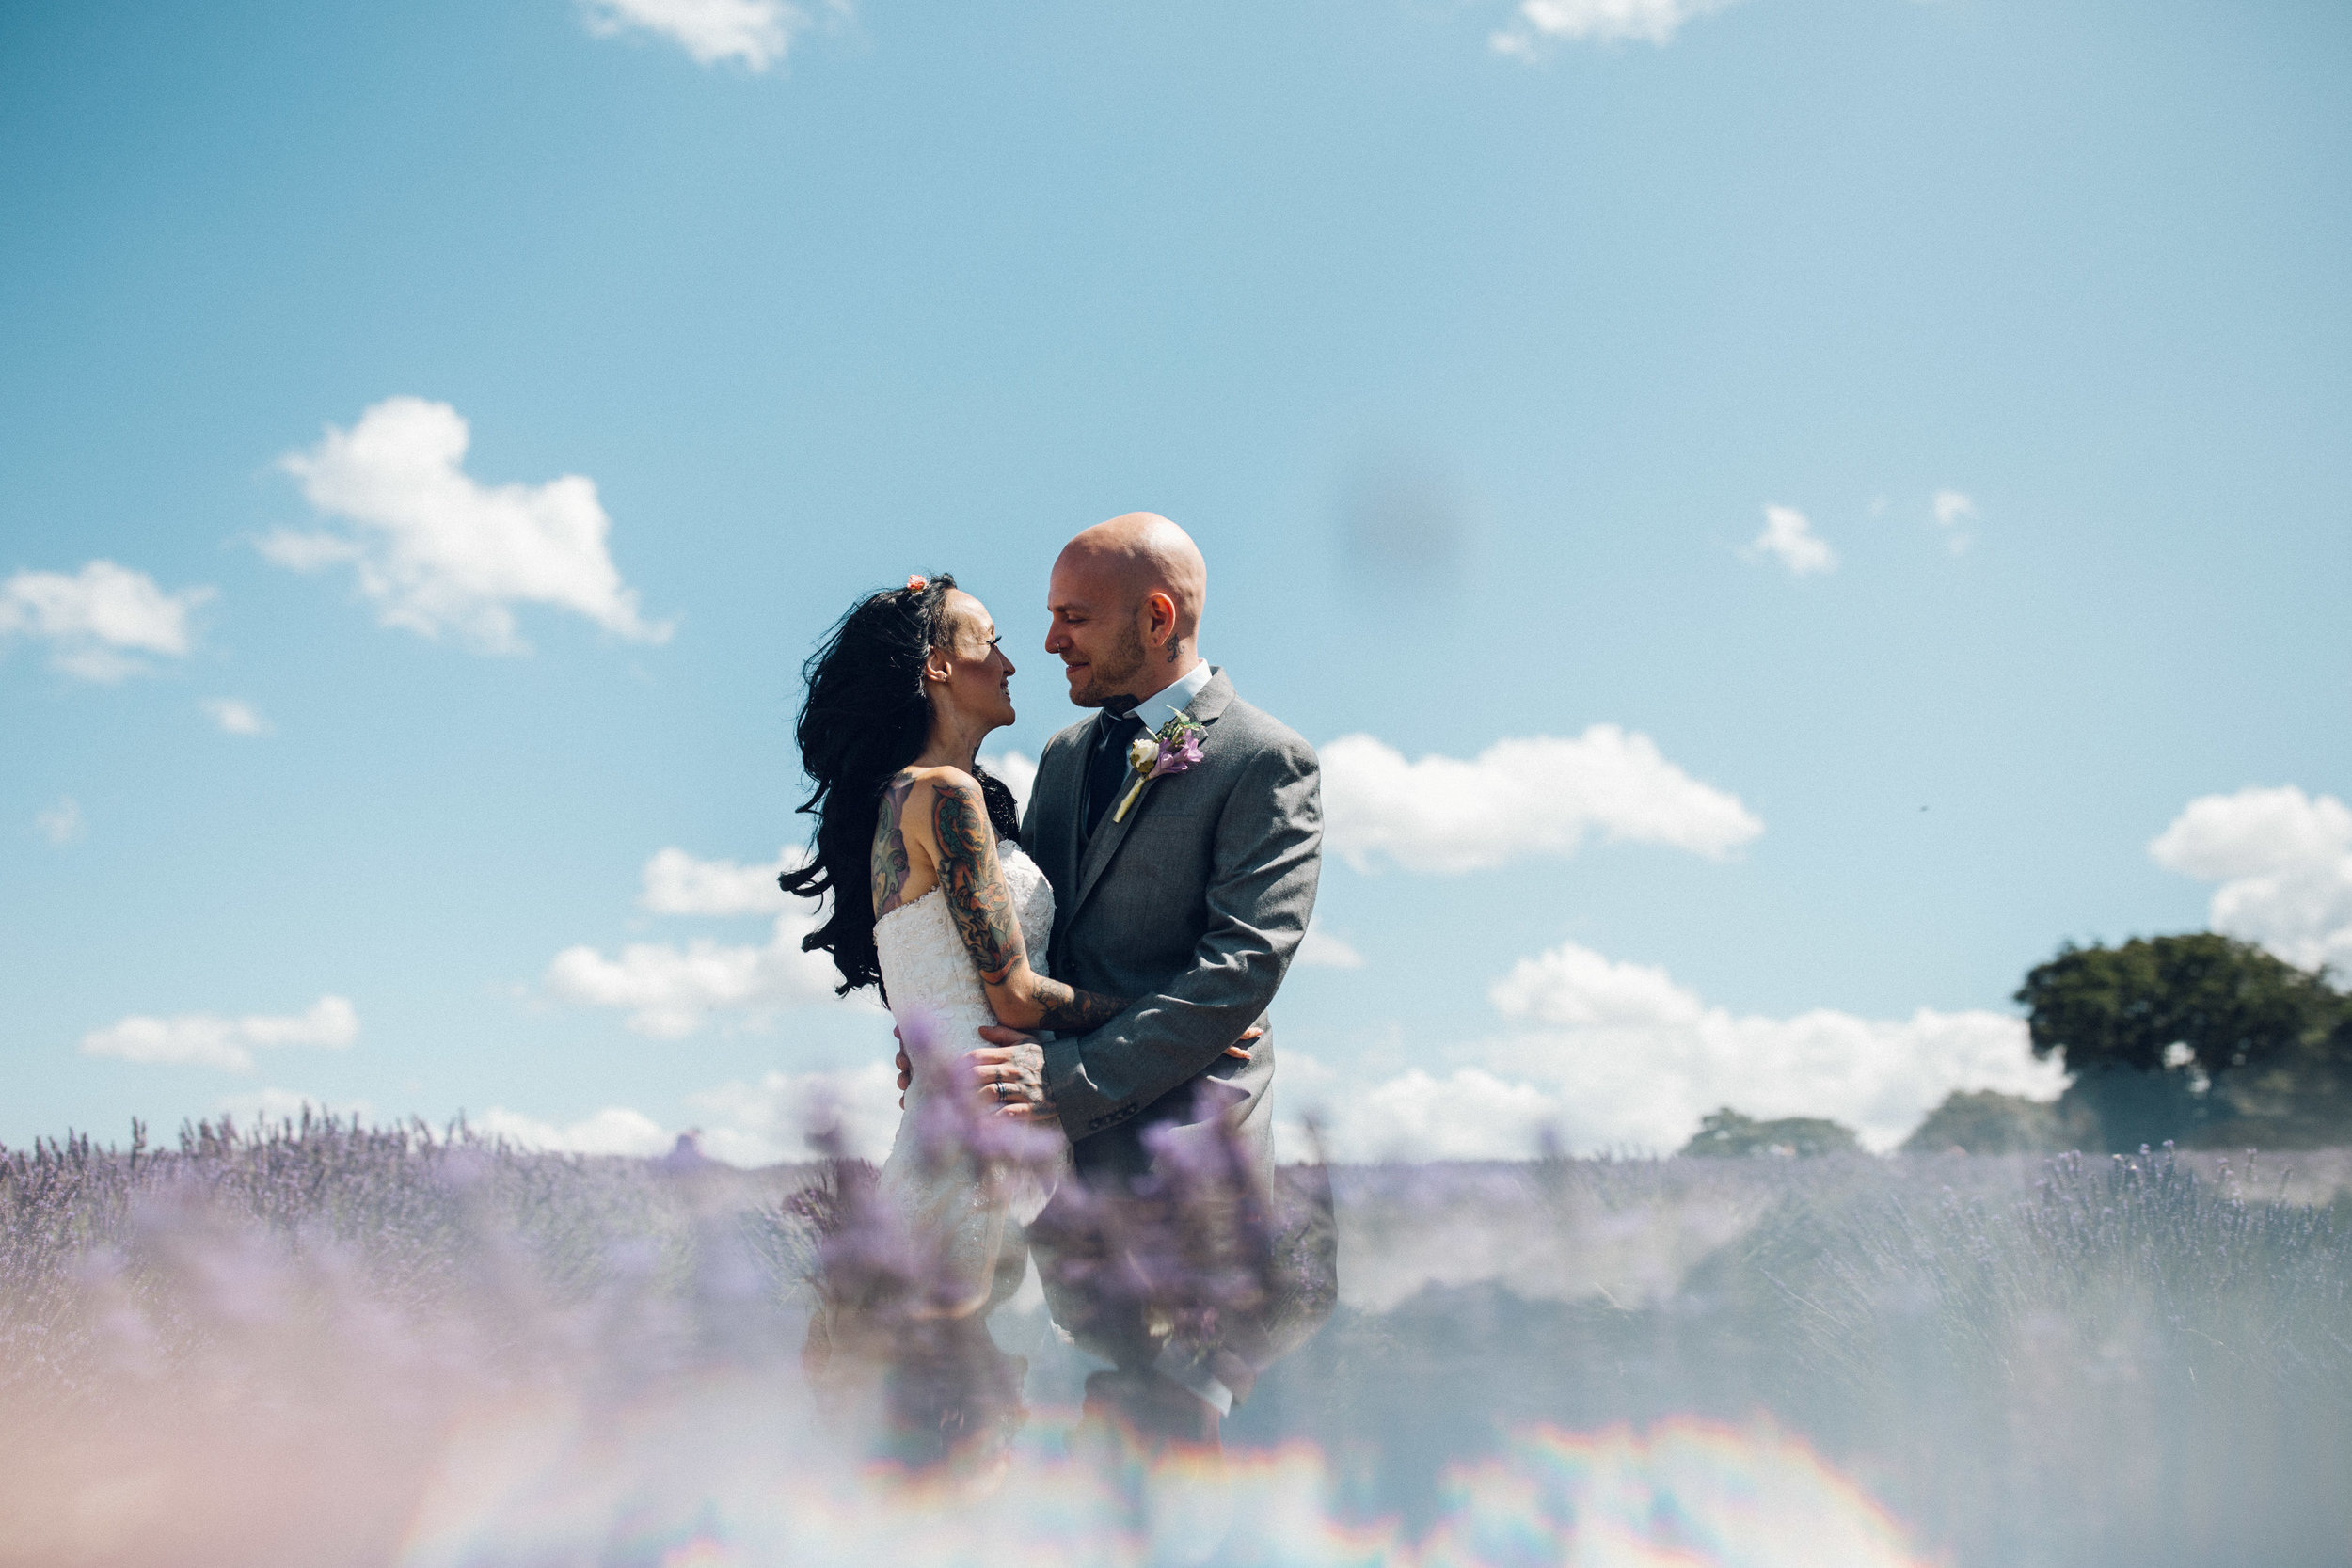 Mayfield Lavender Farm Surrey wedding photos